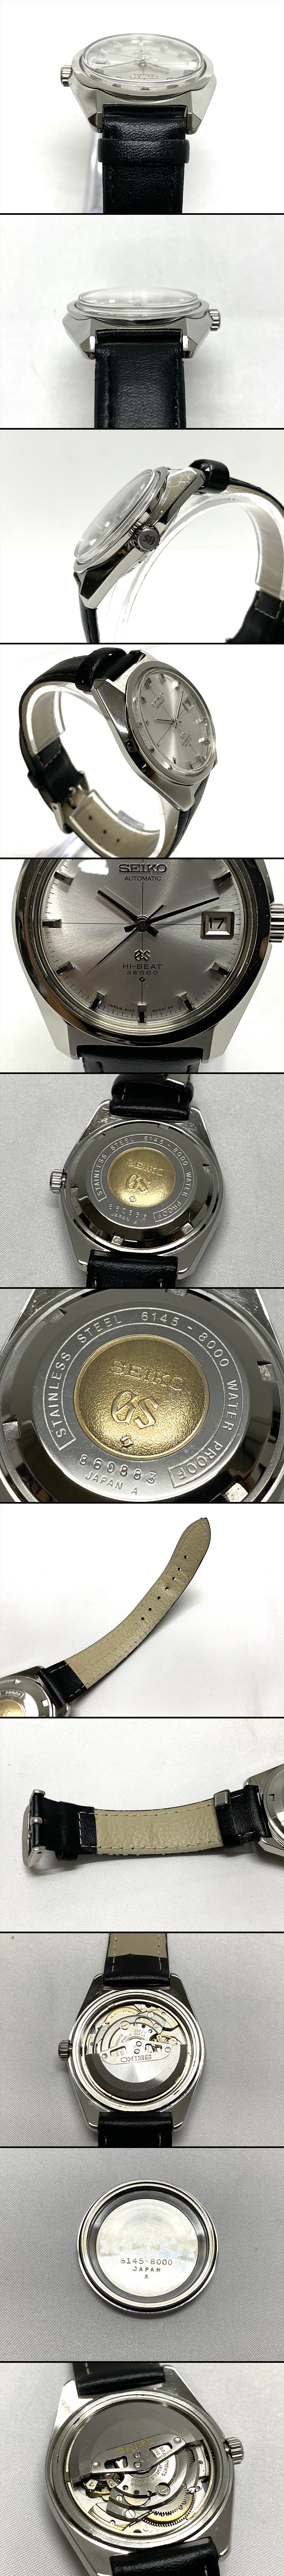 【毎日低価】SEIKO セイコー GS グランドセイコー HI-BEAT 36000 6145-8000 自動巻き 稼働品 腕時計 ベルト社外品 ベルト GENUINE LEATHER B955 グランドセイコー